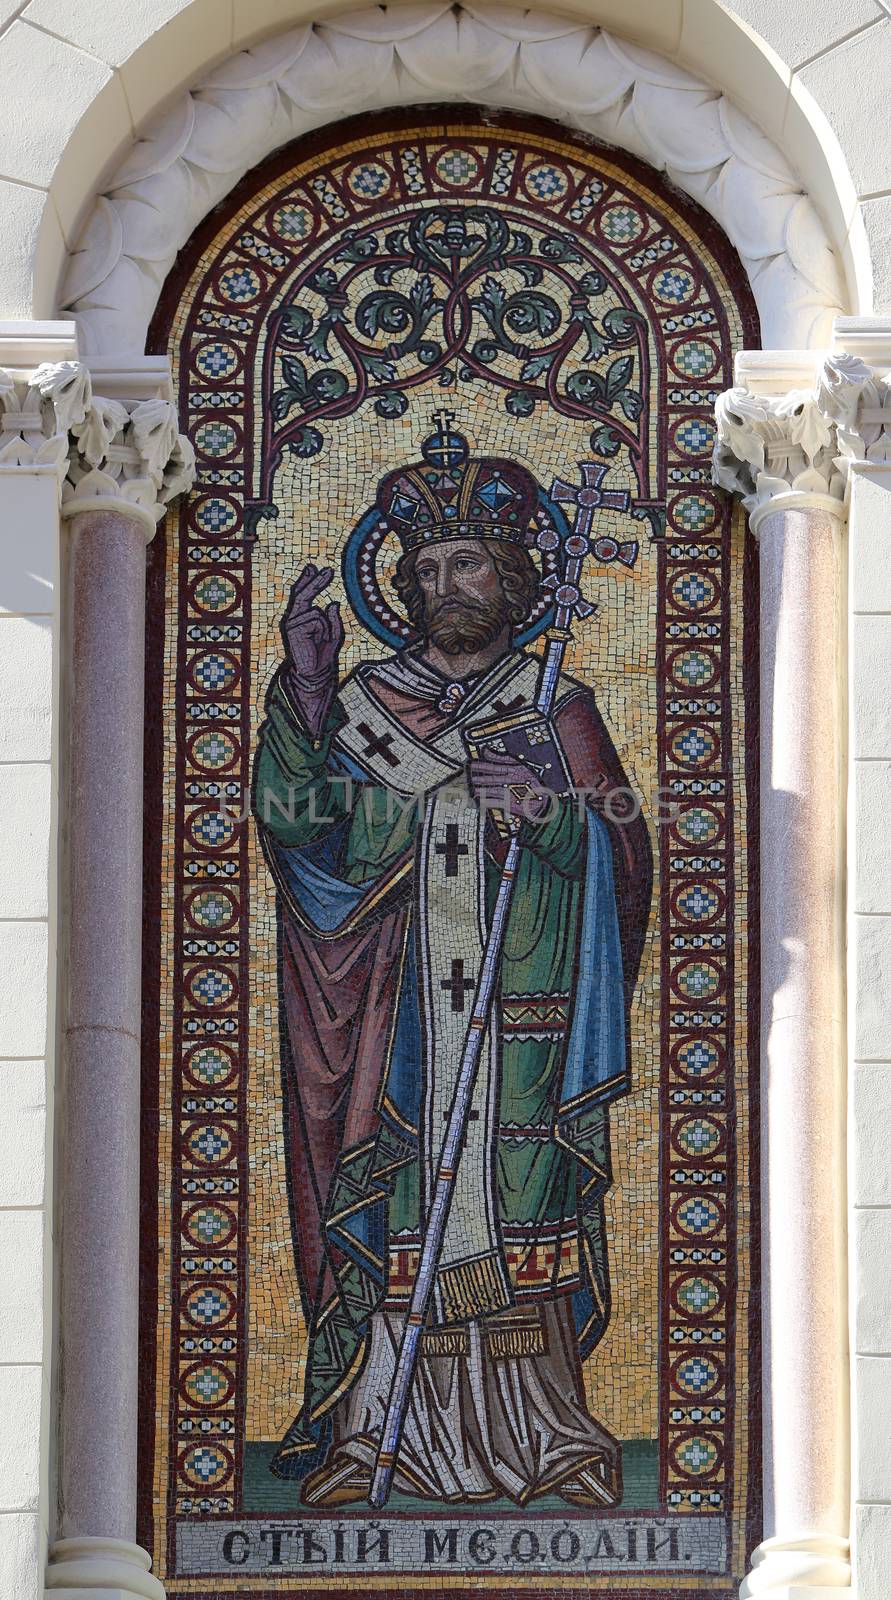 Saint Methodius by atlas